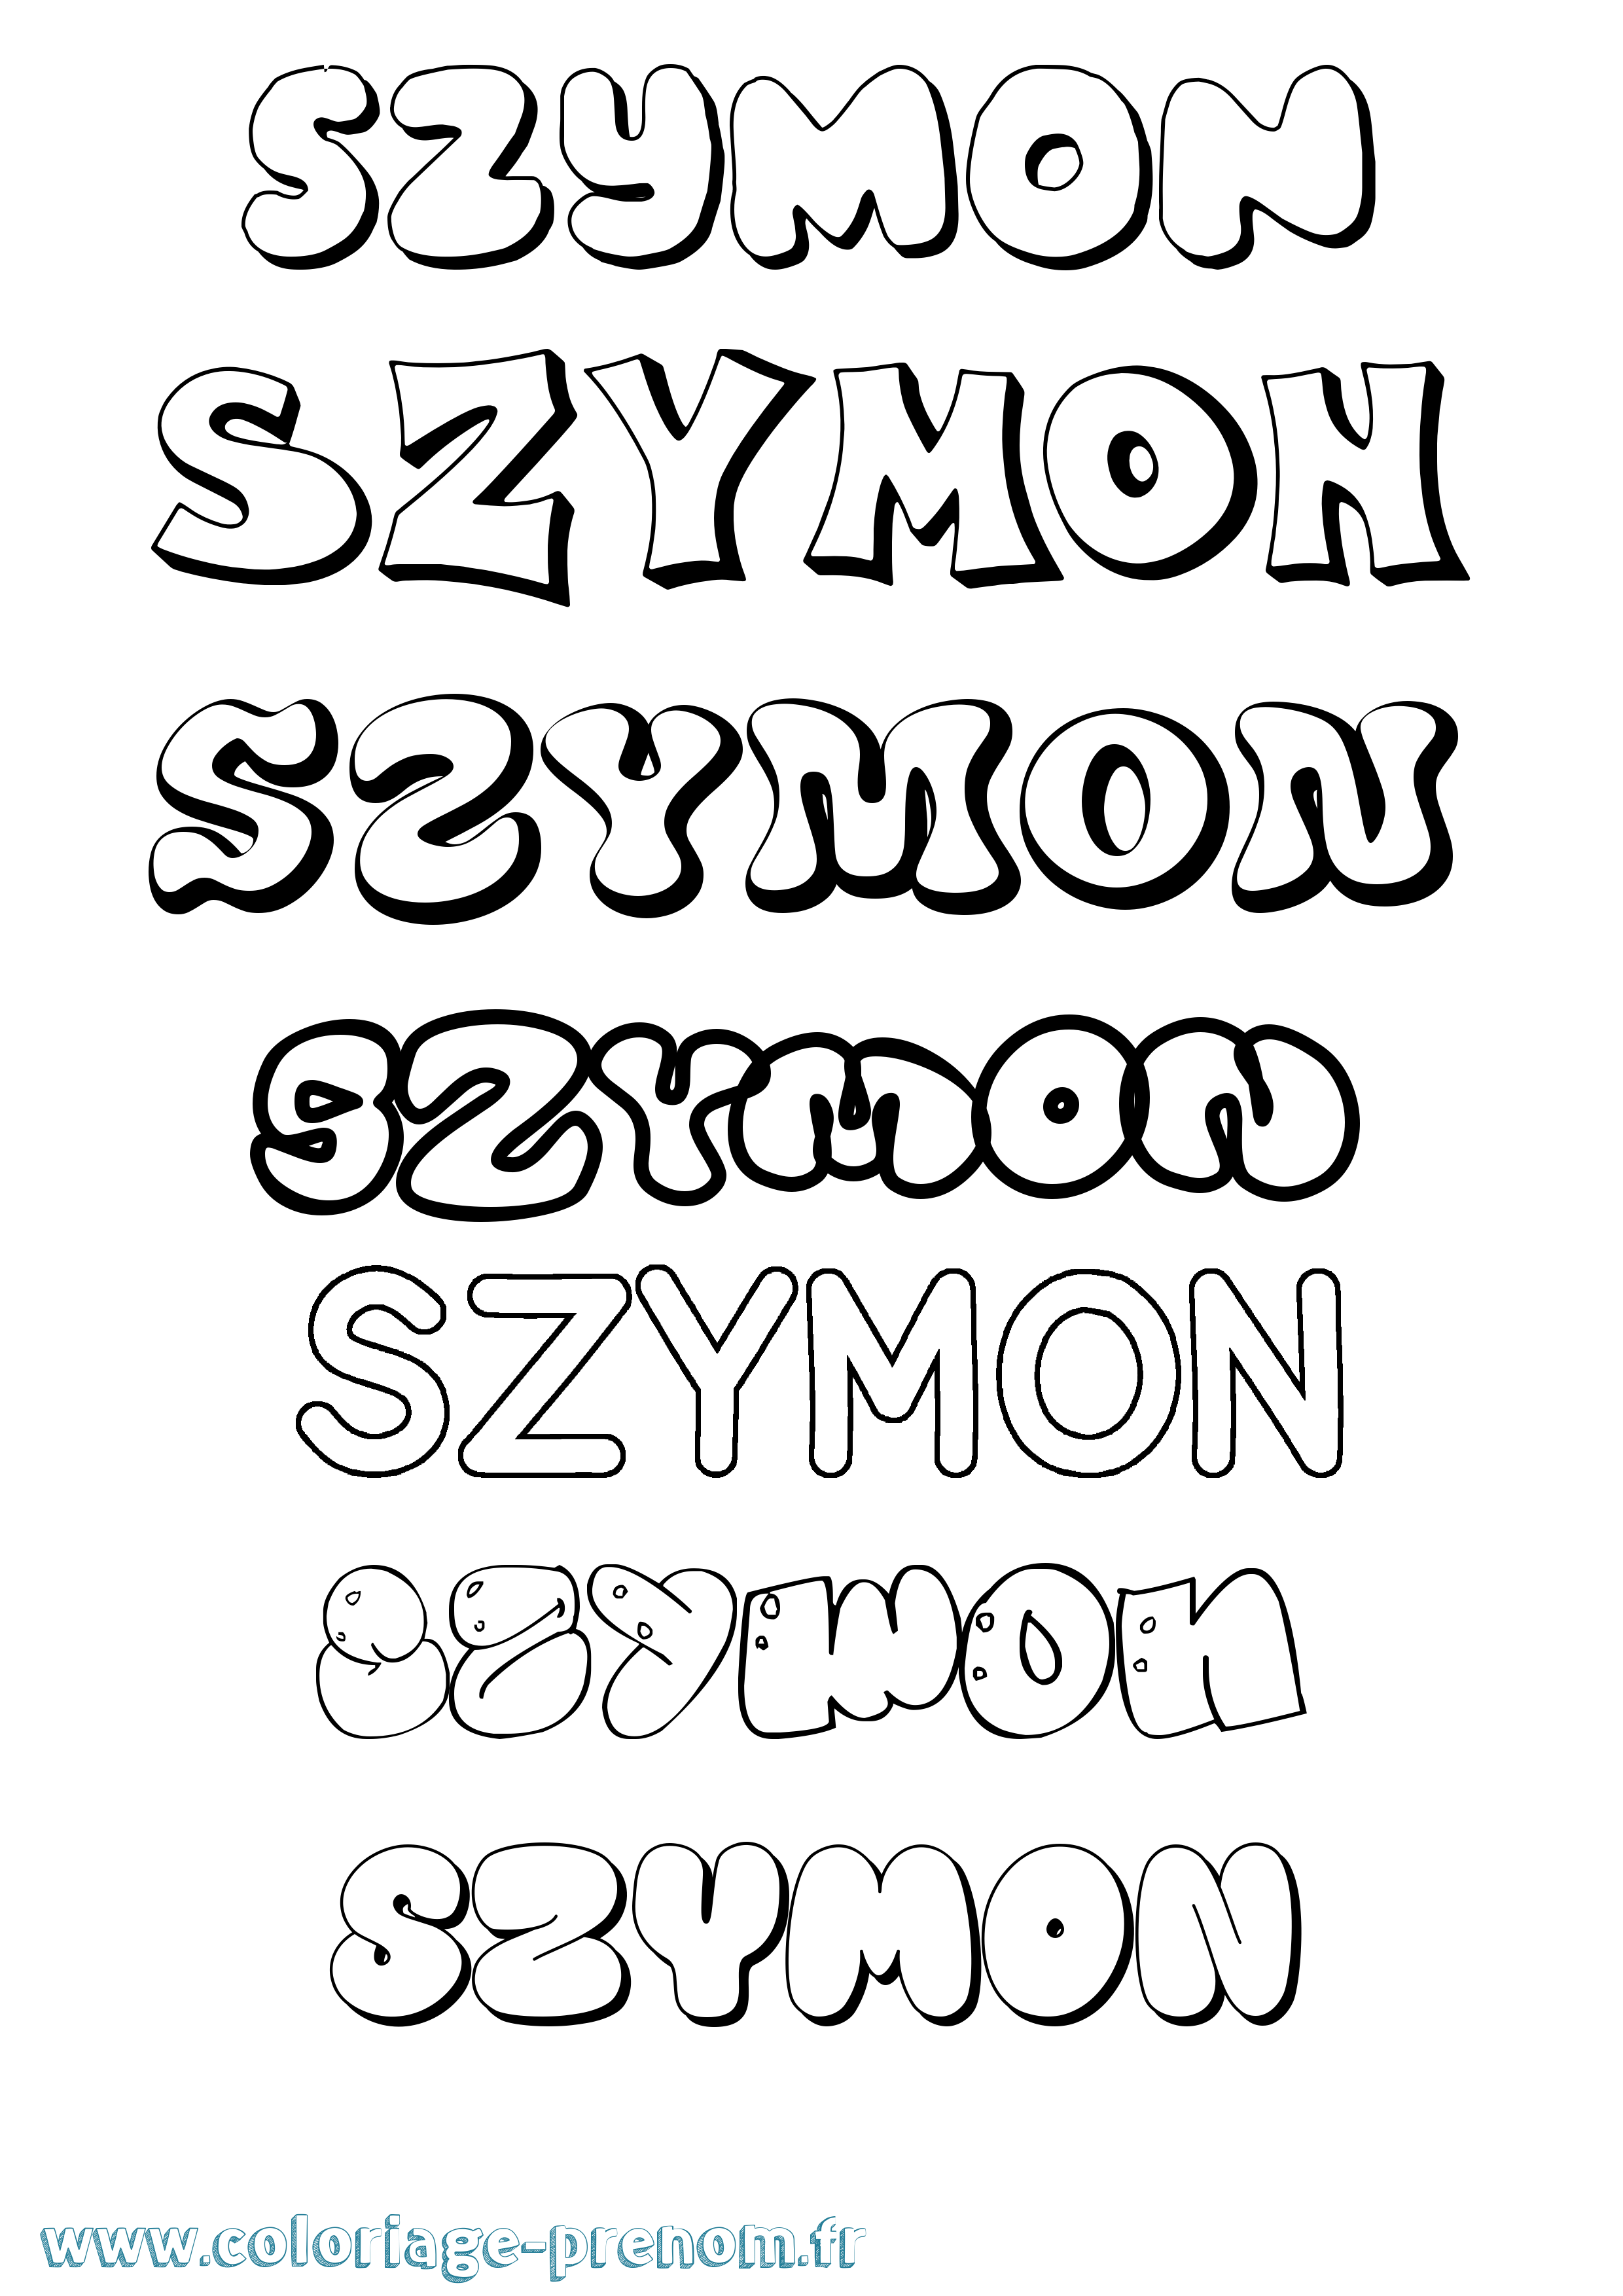 Coloriage prénom Szymon Bubble